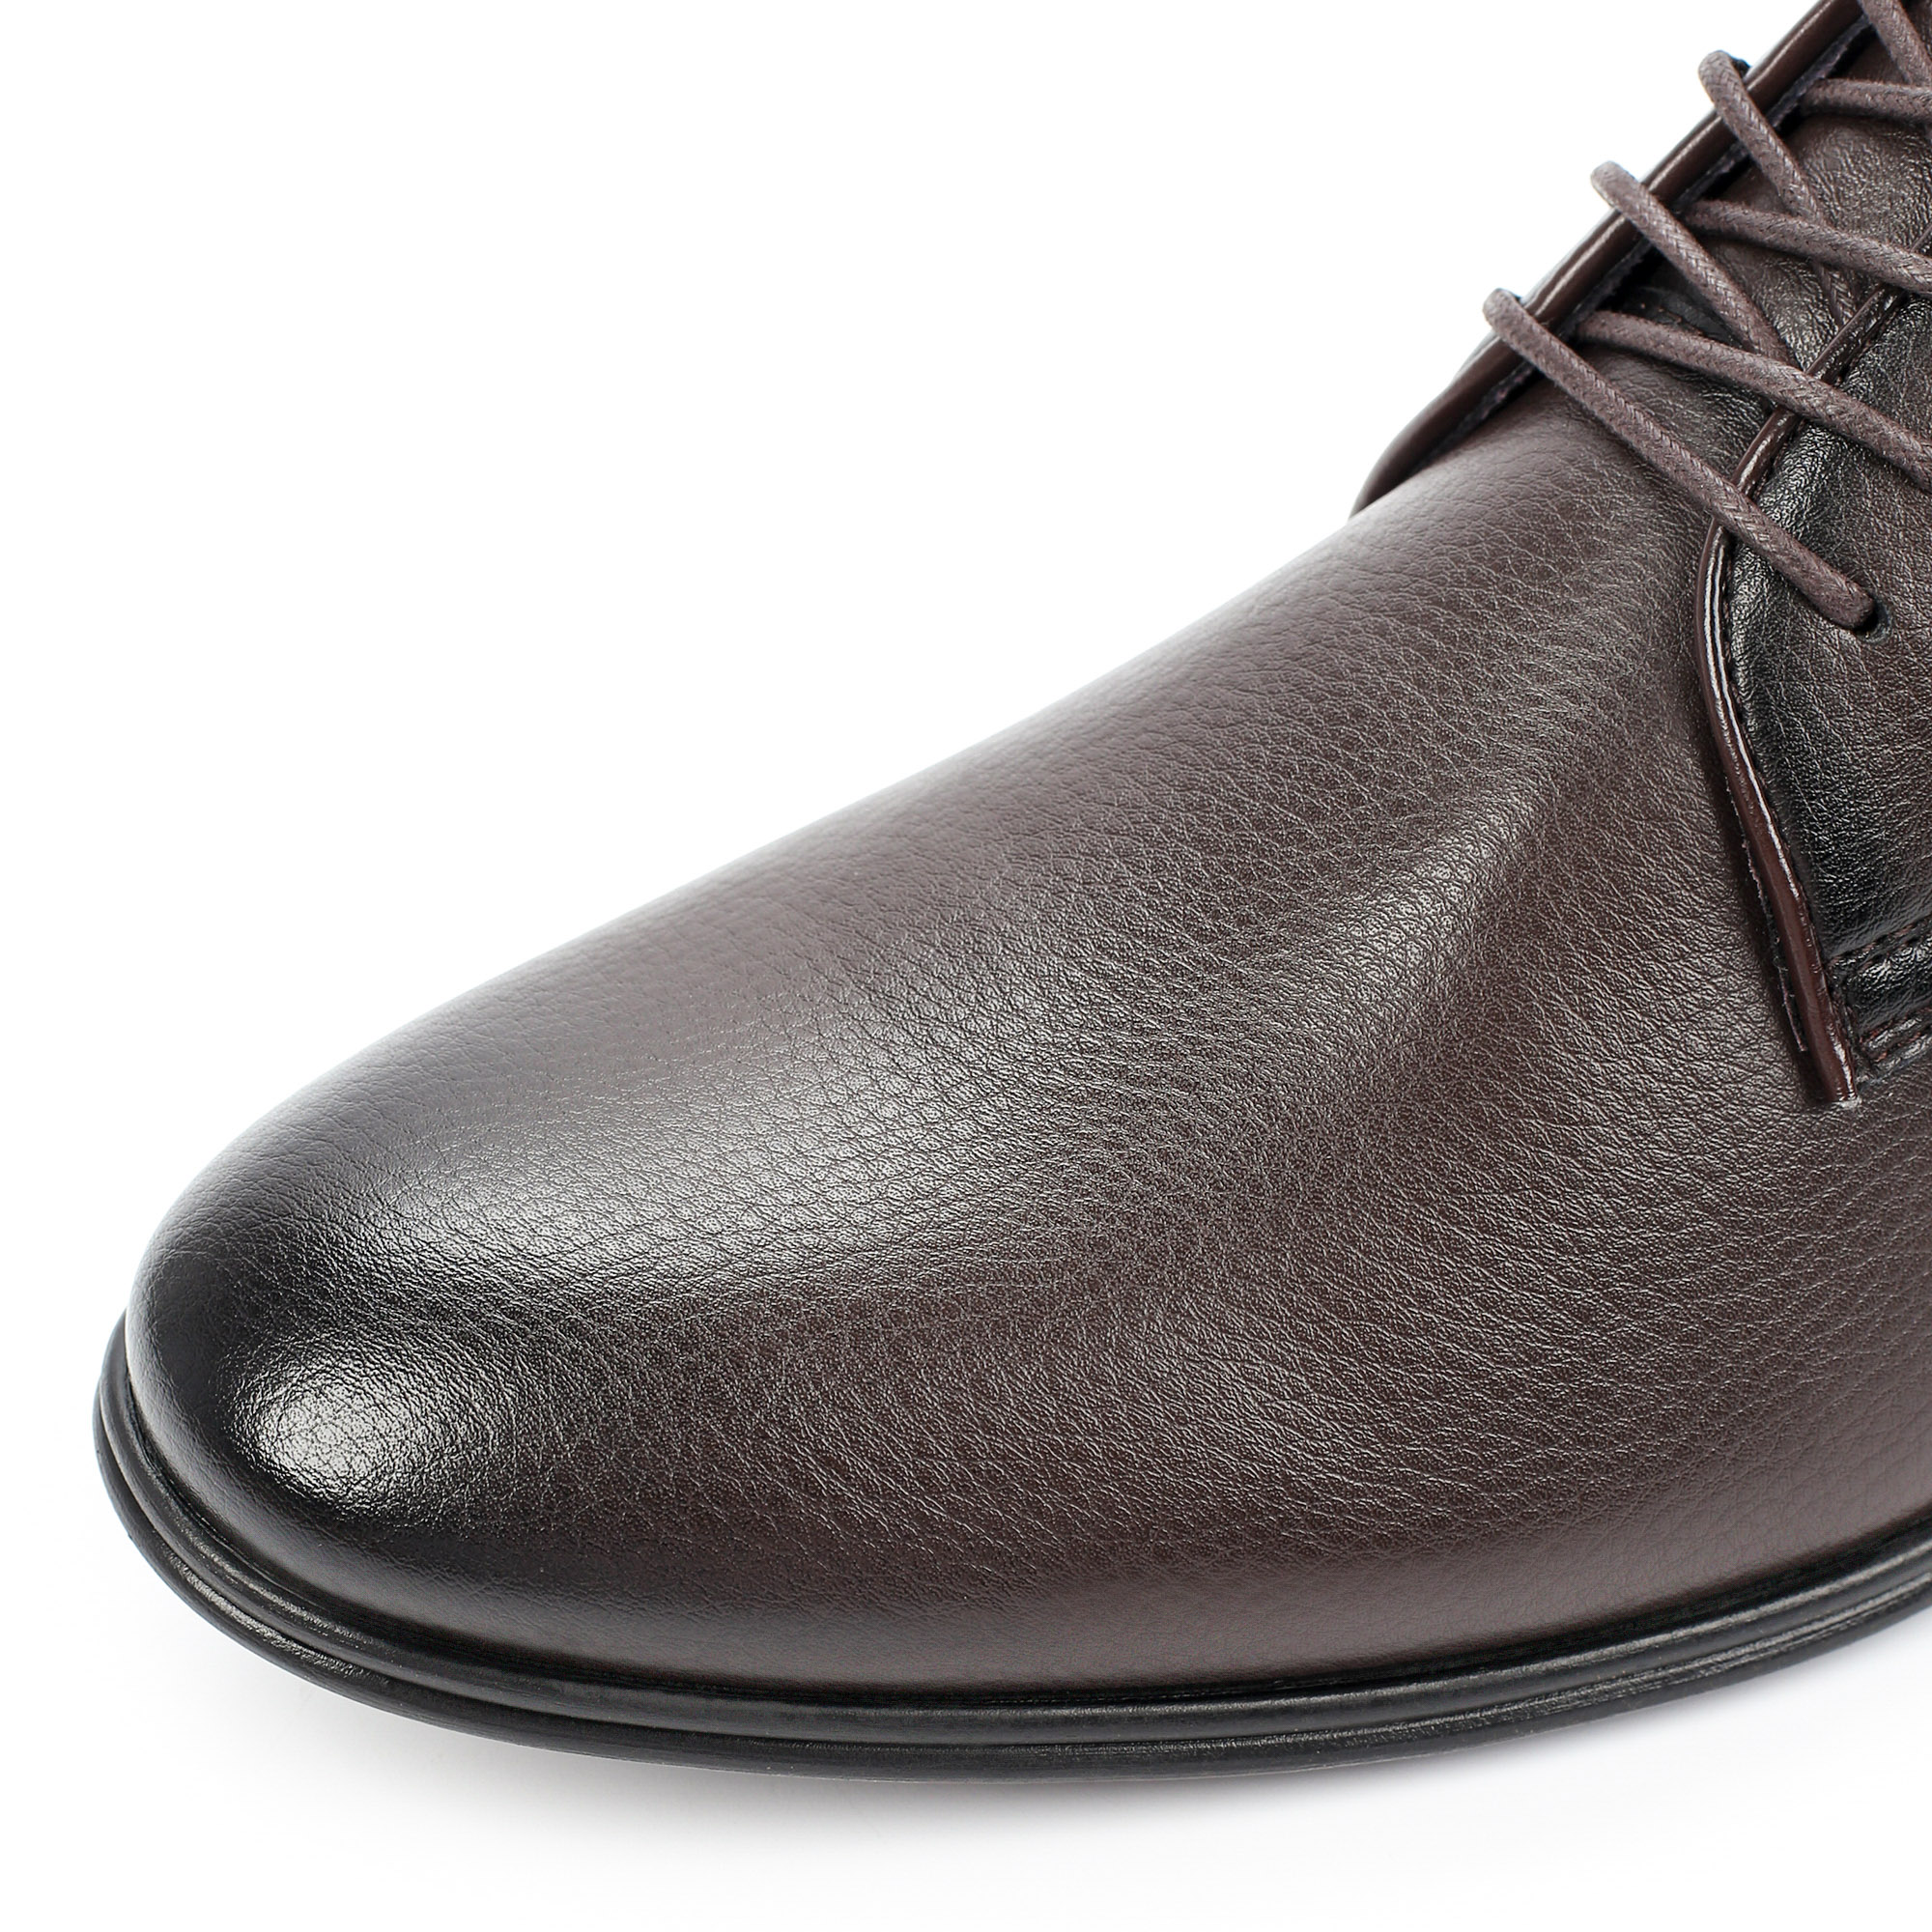 Туфли/полуботинки Thomas Munz 073-747A-2109, цвет темно-коричневый, размер 42 - фото 6